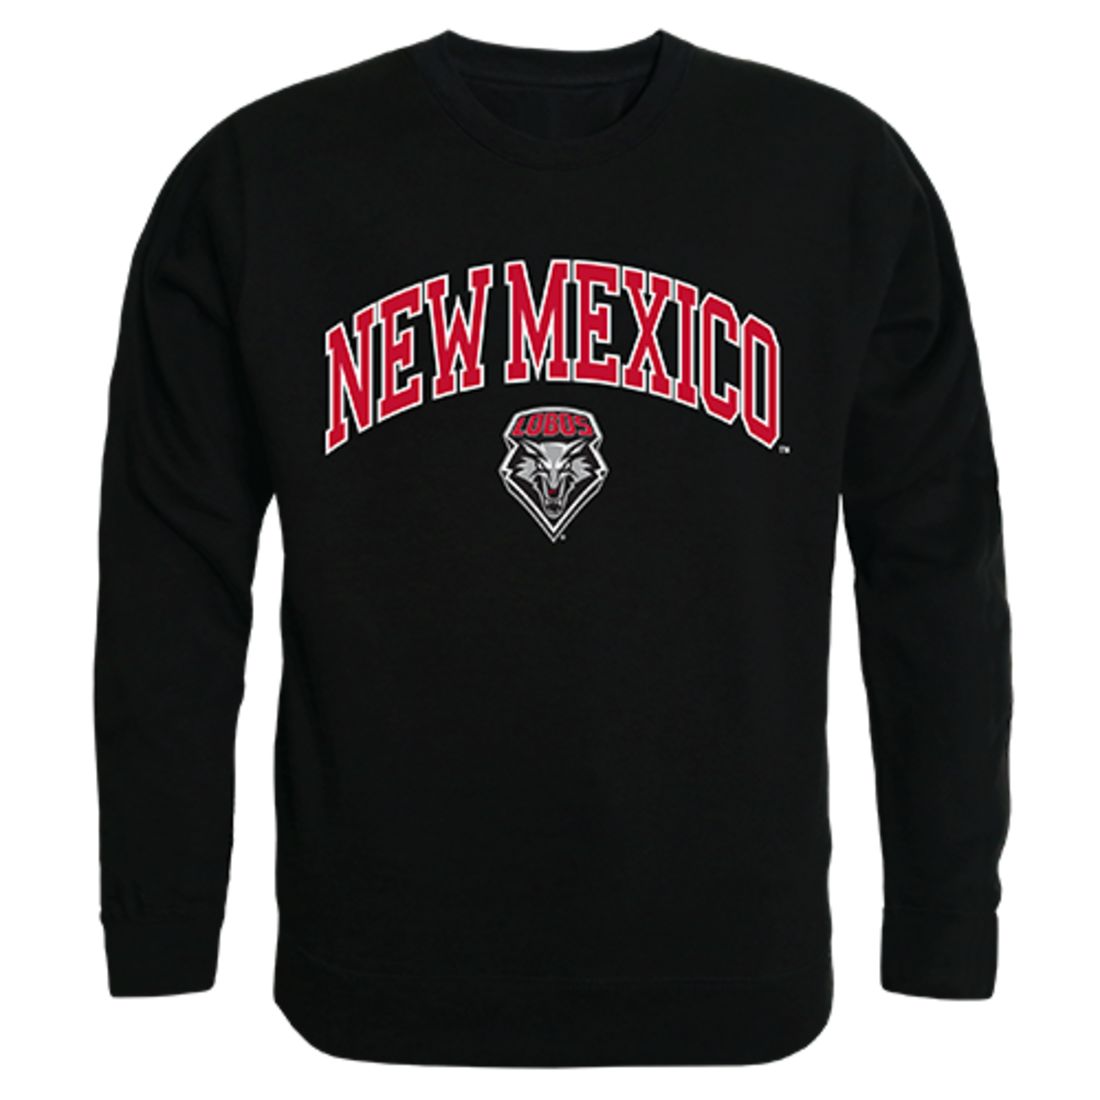 UNM University of New Mexico Campus Crewneck Pullover Sweatshirt Sweater Black-Campus-Wardrobe